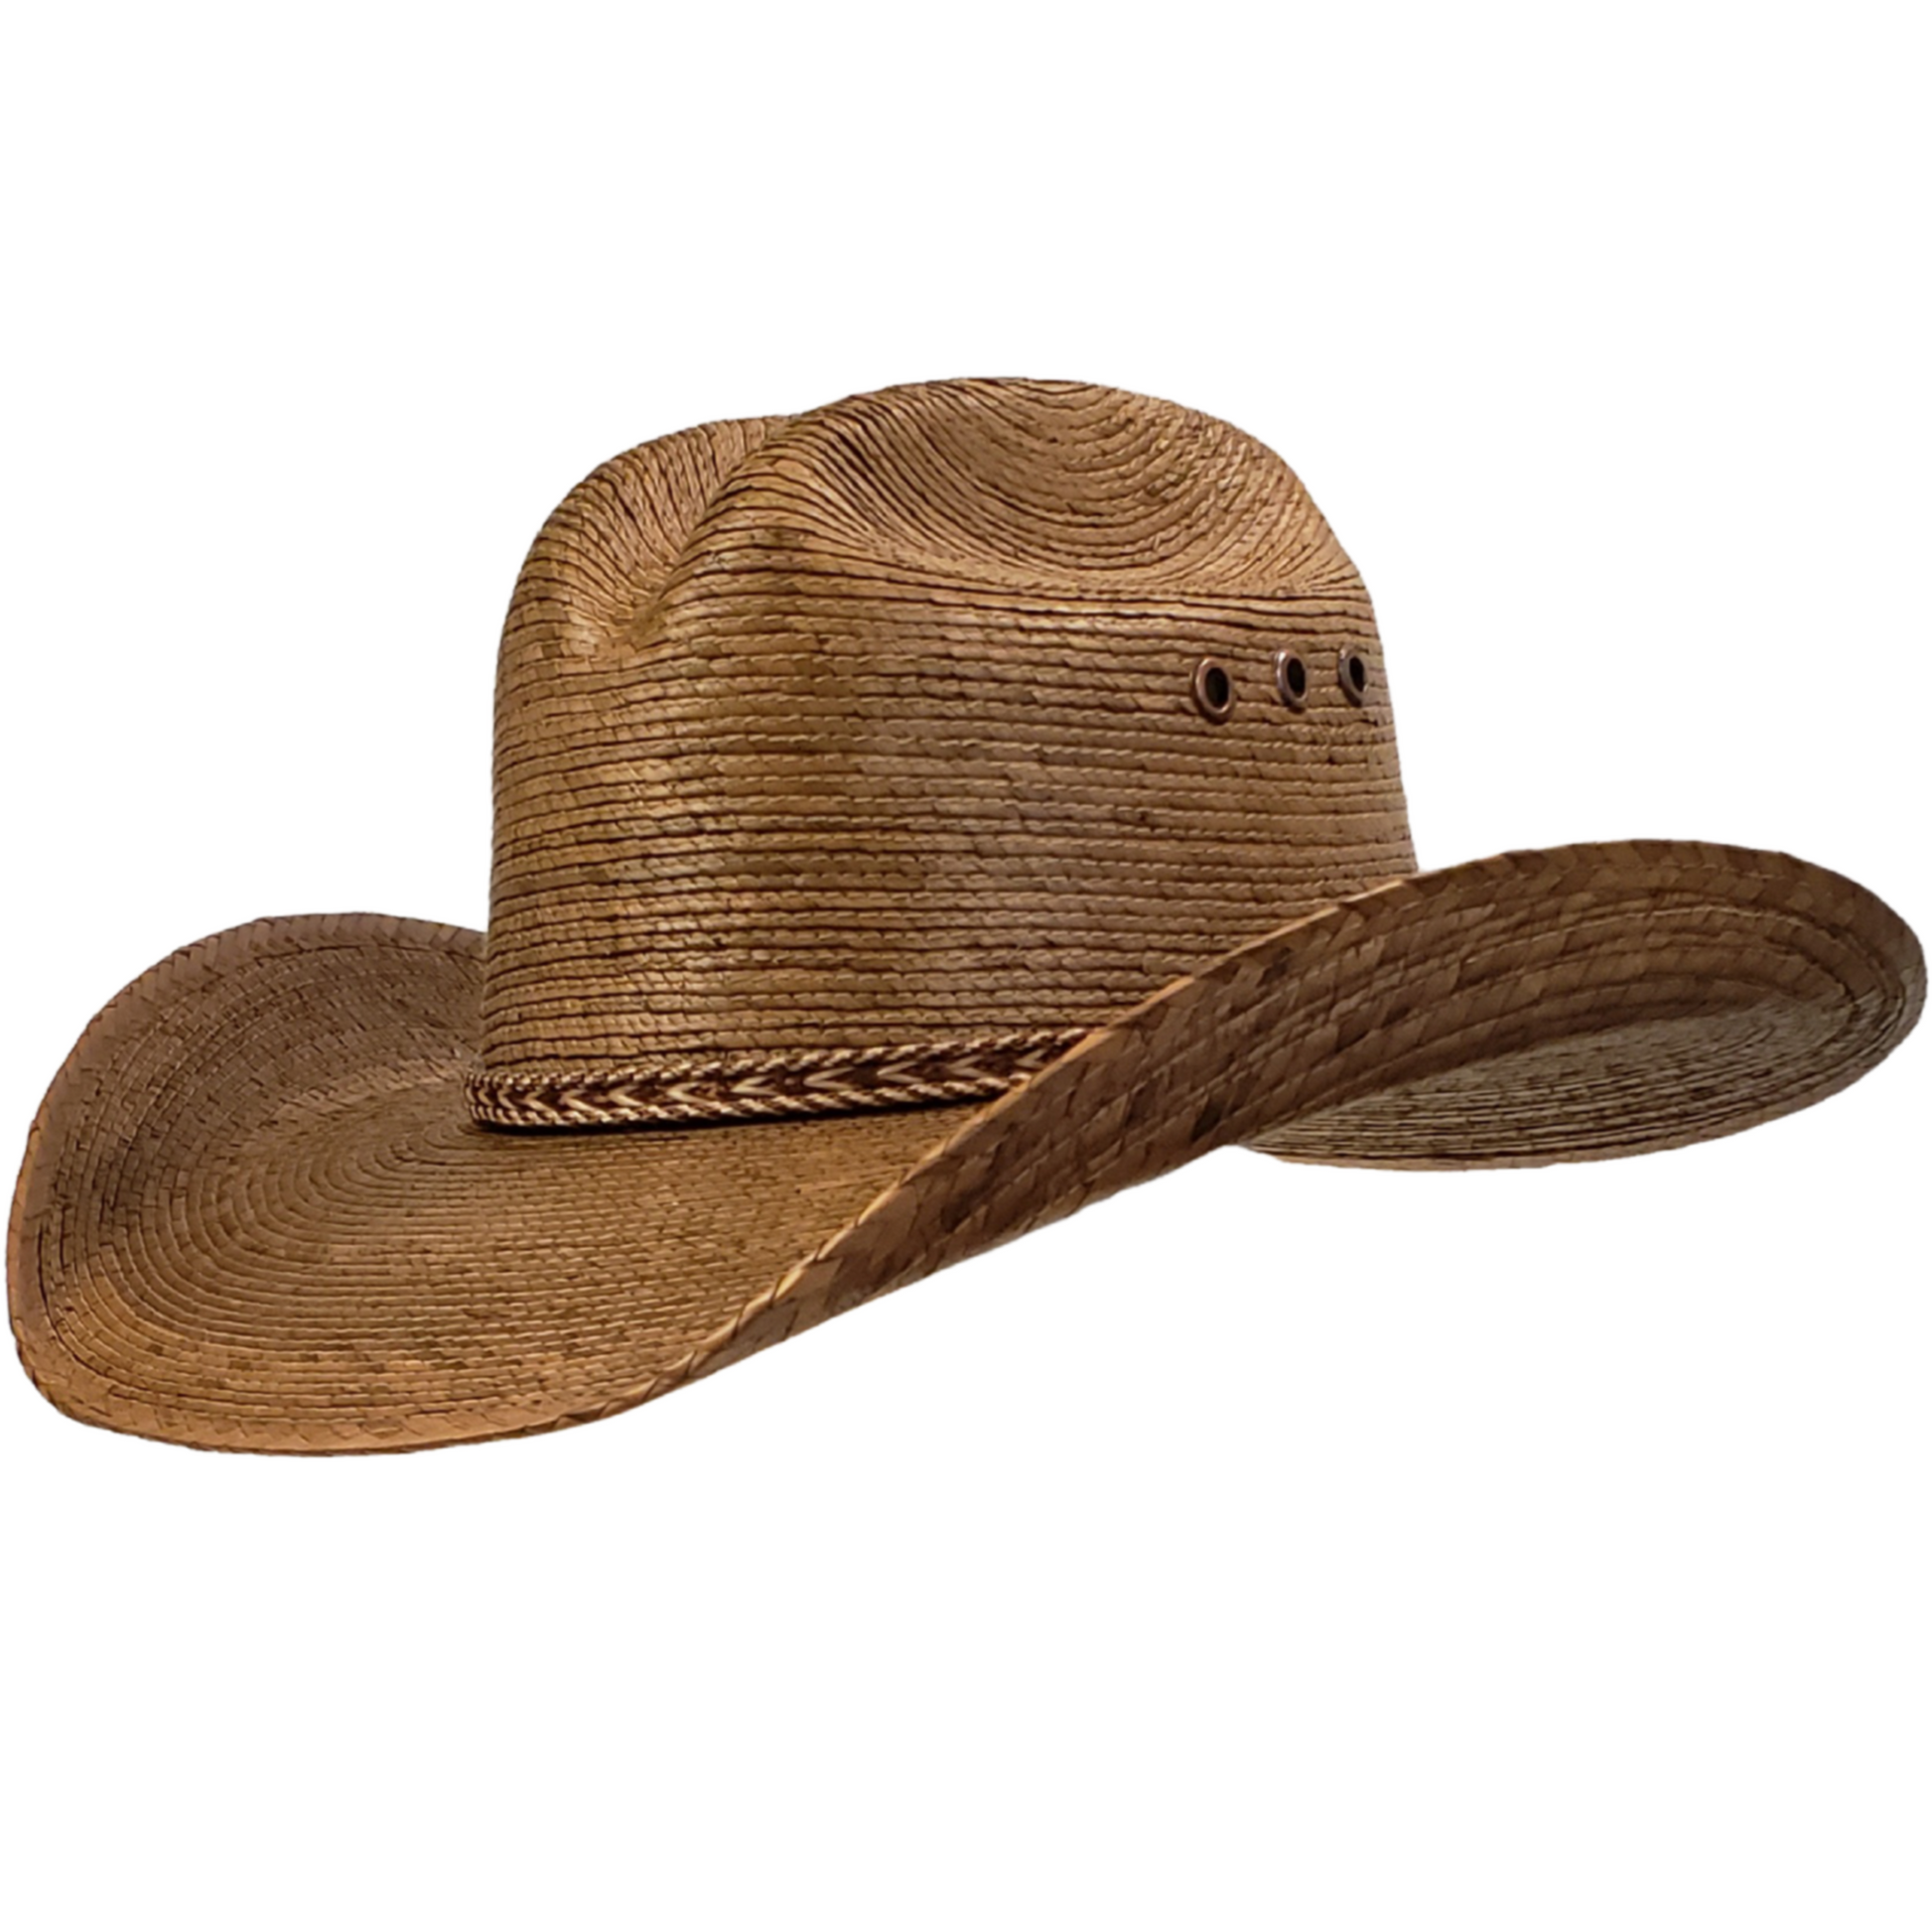 Brown palm leaf cowboy hat. Western hats near me.